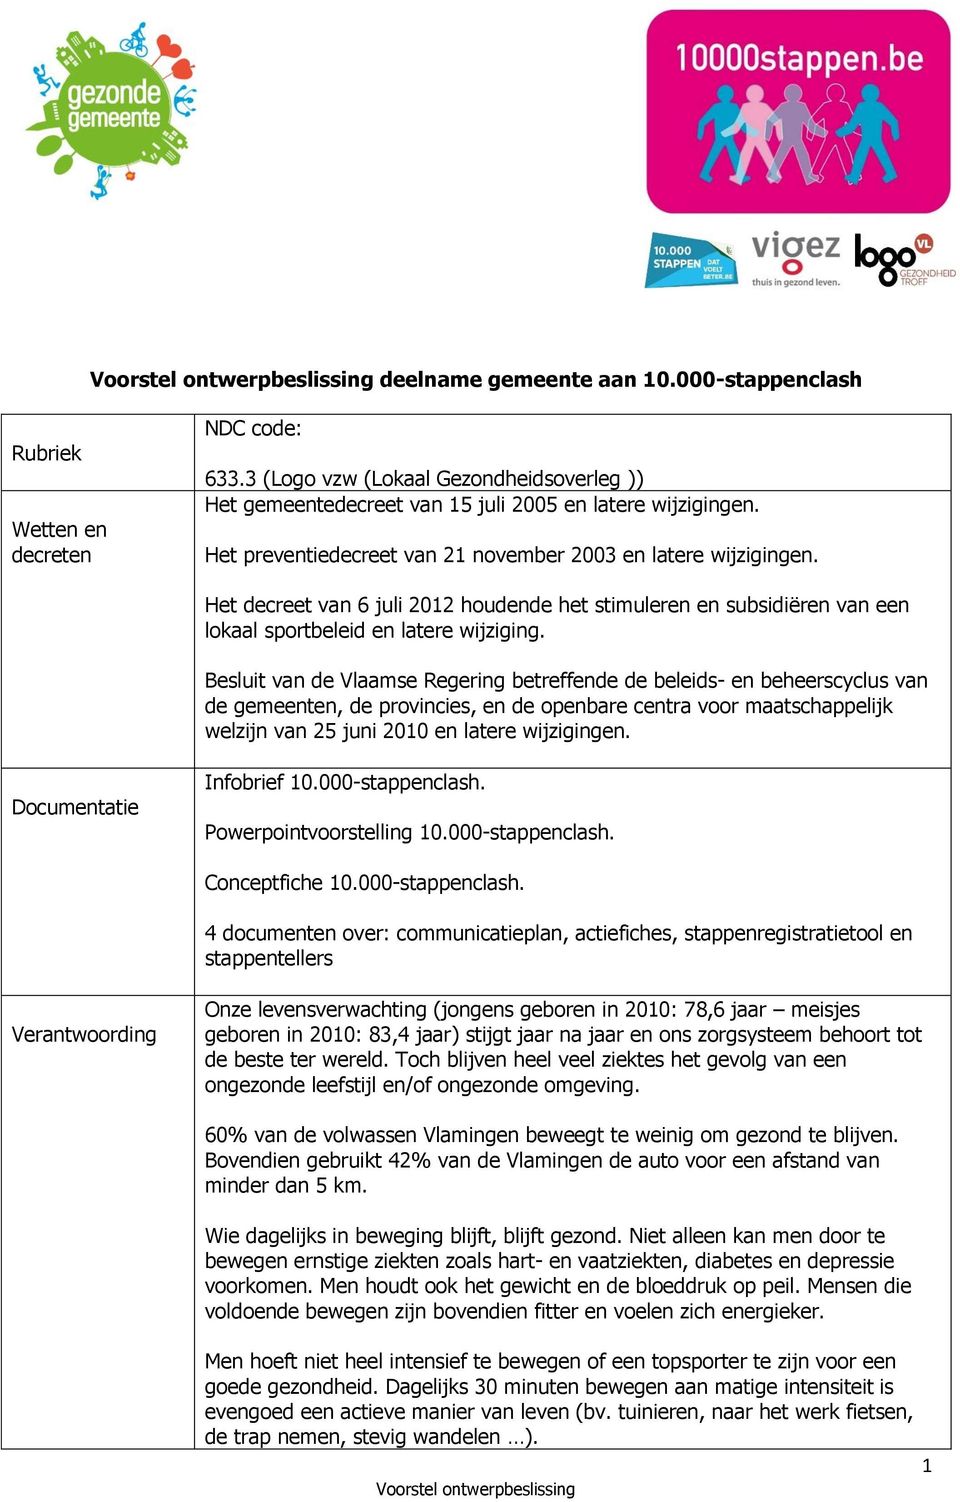 Besluit van de Vlaamse Regering betreffende de beleids- en beheerscyclus van de gemeenten, de provincies, en de openbare centra voor maatschappelijk welzijn van 25 juni 2010 en latere wijzigingen.